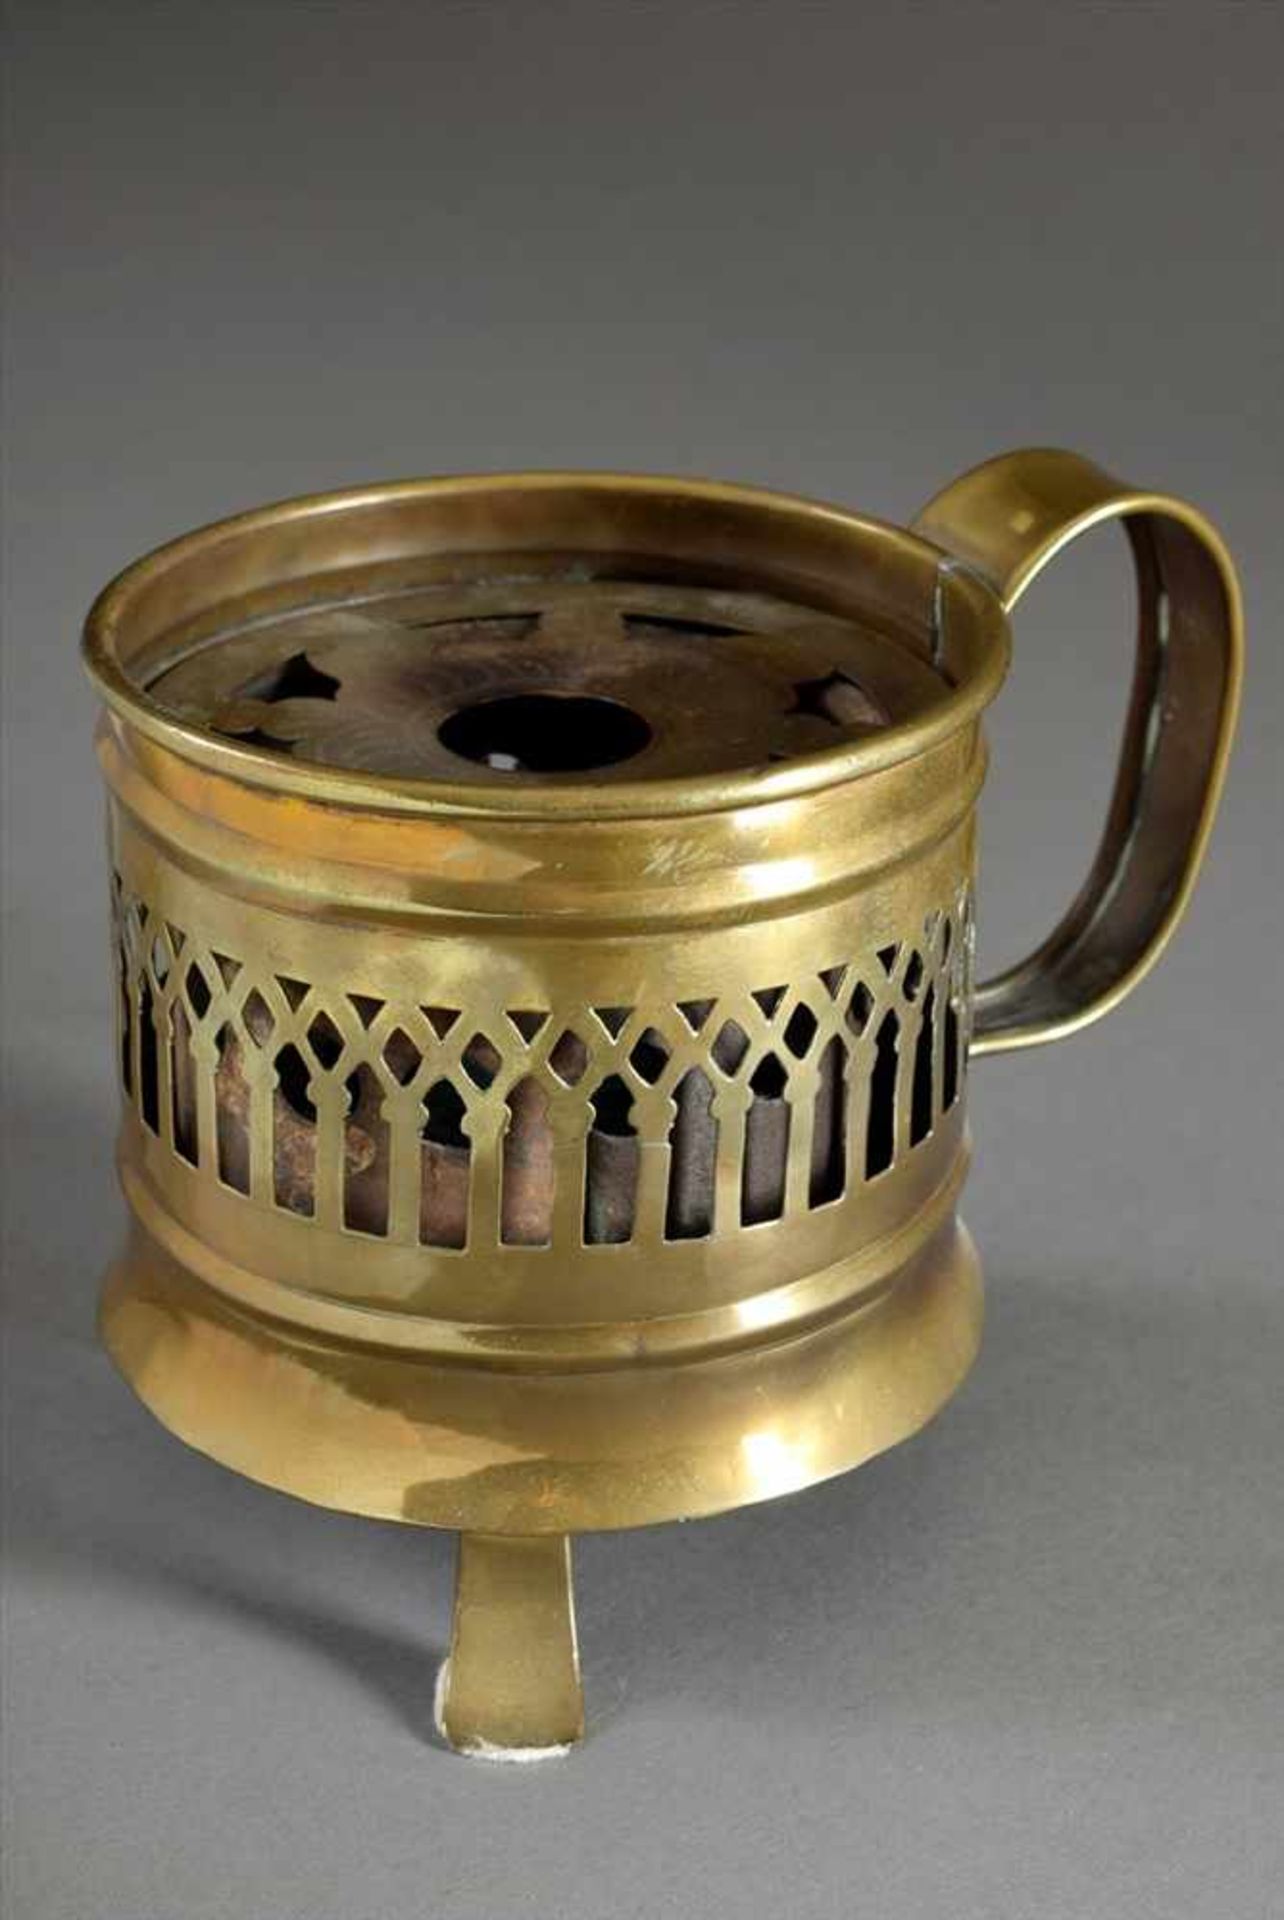 Durchbrochenes Messing Stövchen mit Einsatz, 19 Jh., Ø 10,5cm, H. 12cmOpenwork brass teapot with